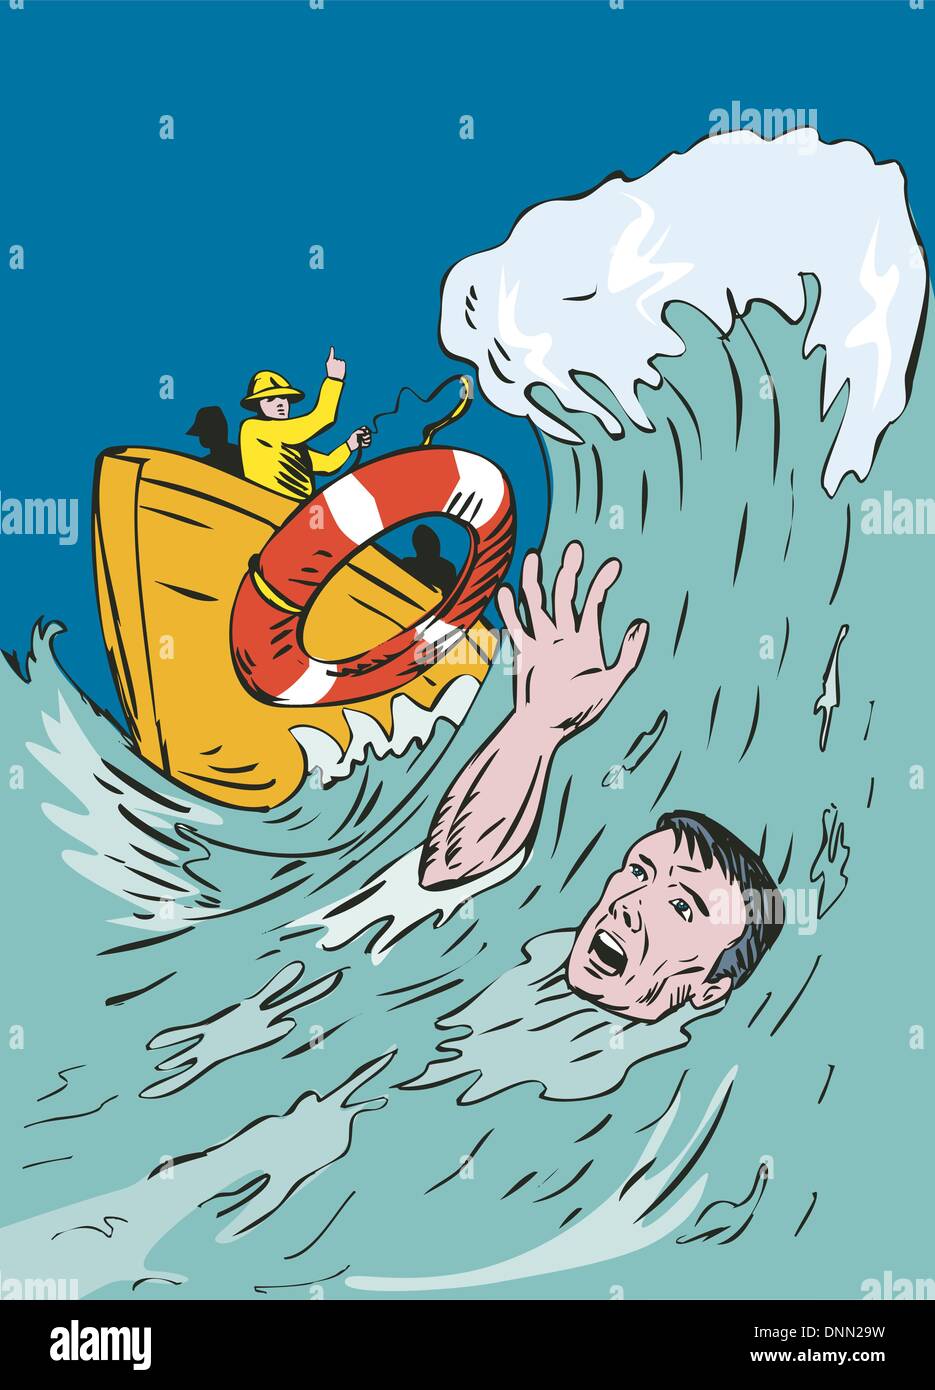 Illustrazione dell'uomo annegamento e uomo bagnino di salvataggio fatto in stile retrò. Illustrazione Vettoriale